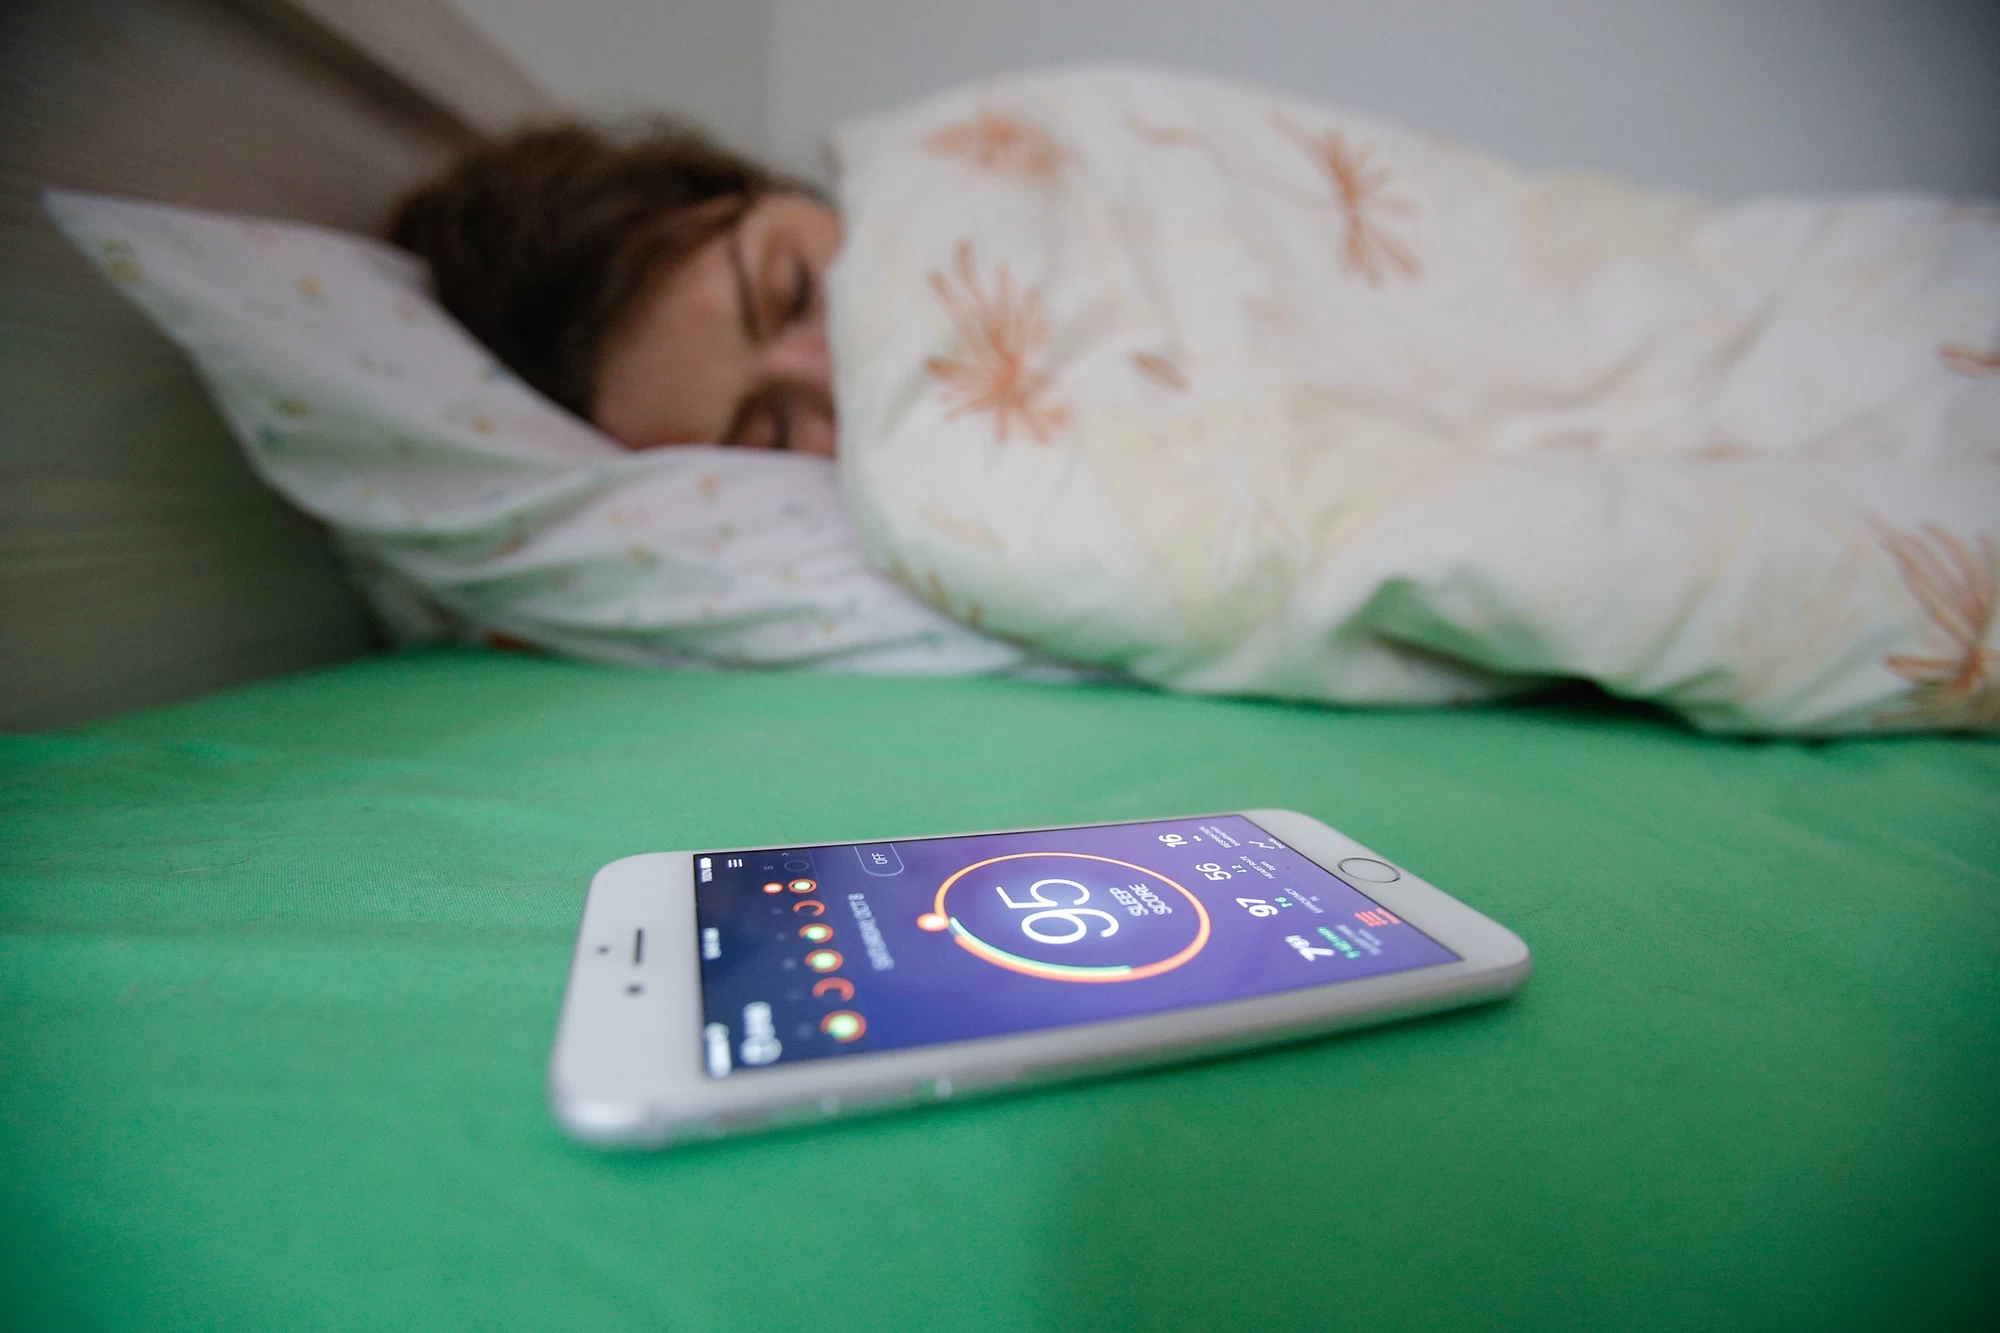 Smartphones are ruining sleep